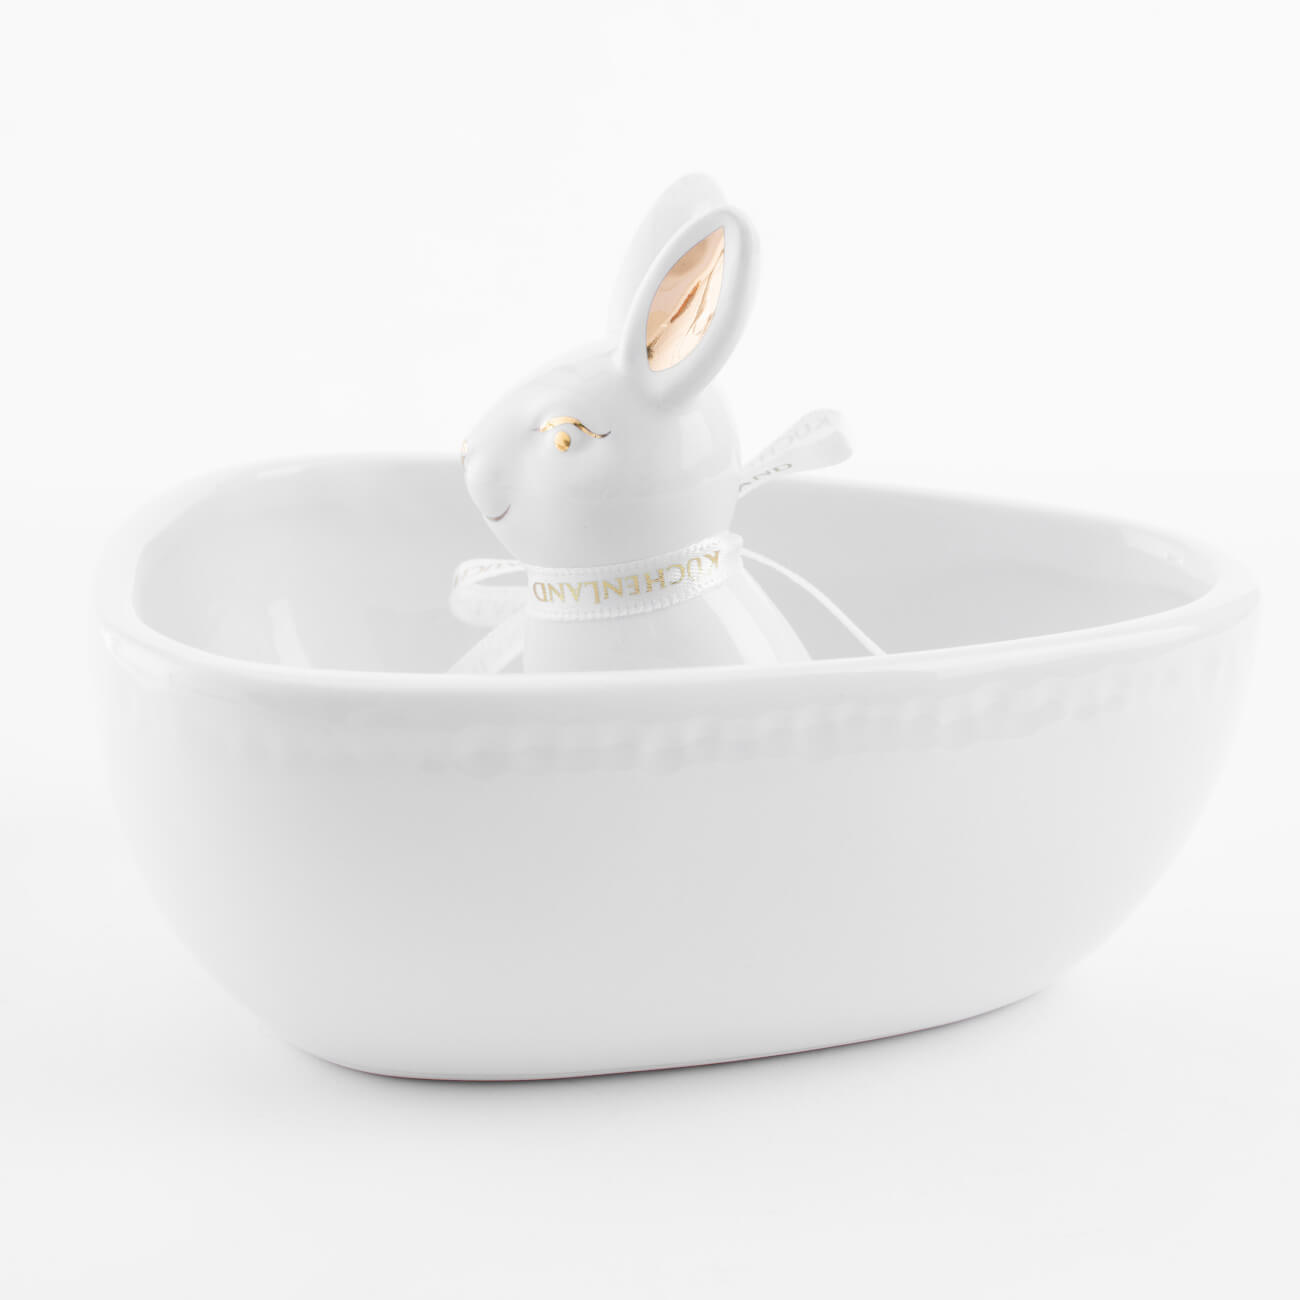 Конфетница, 13х13 см, керамика, бело-золотистая, Кролик внутри, Easter gold